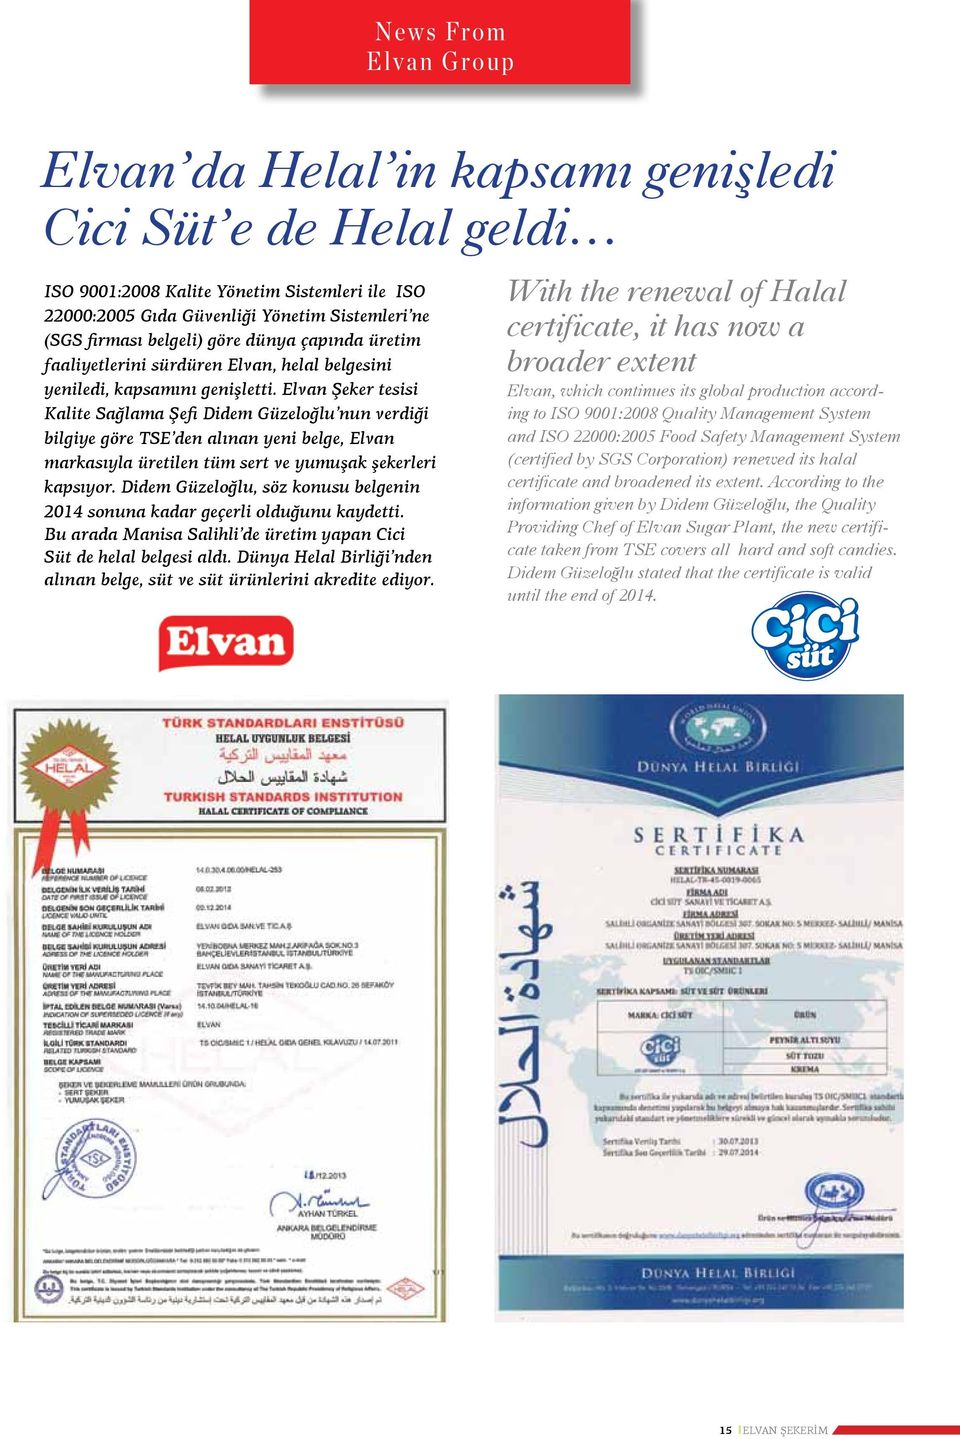 Elvan Şeker tesisi Kalite Sağlama Şefi Didem Güzeloğlu nun verdiği bilgiye göre TSE den alınan yeni belge, Elvan markasıyla üretilen tüm sert ve yumuşak şekerleri kapsıyor.